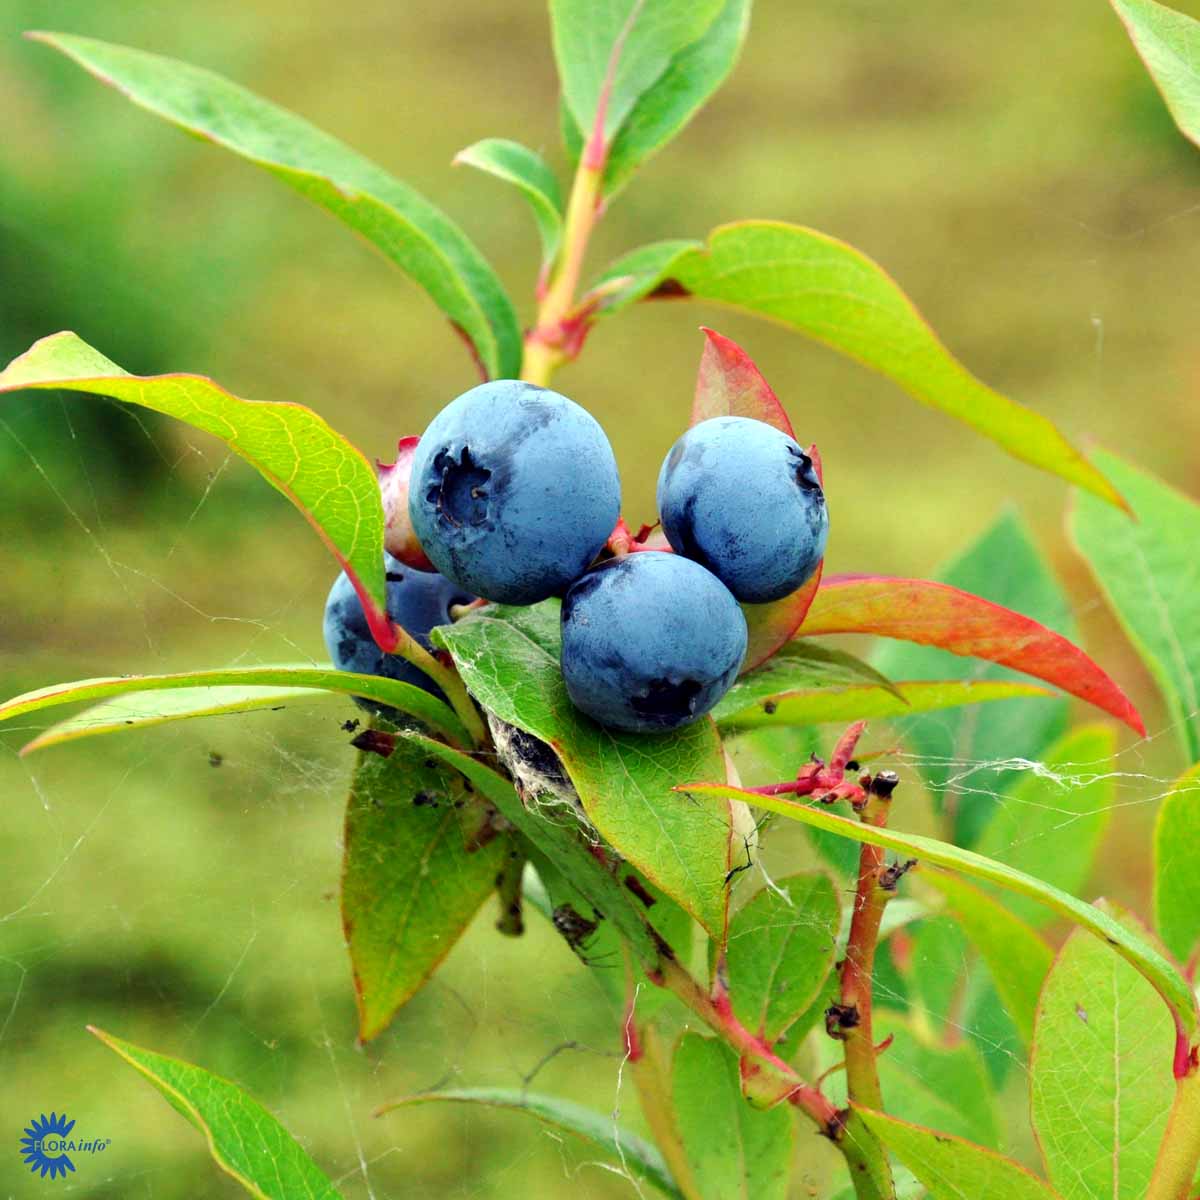 Blue Crop Blåbærbusk også kendt under navnet vaccinium corymbosum blue crop, her i flot solskin og med begyndende røde, gule og orange efterårs og høst farver på bladene